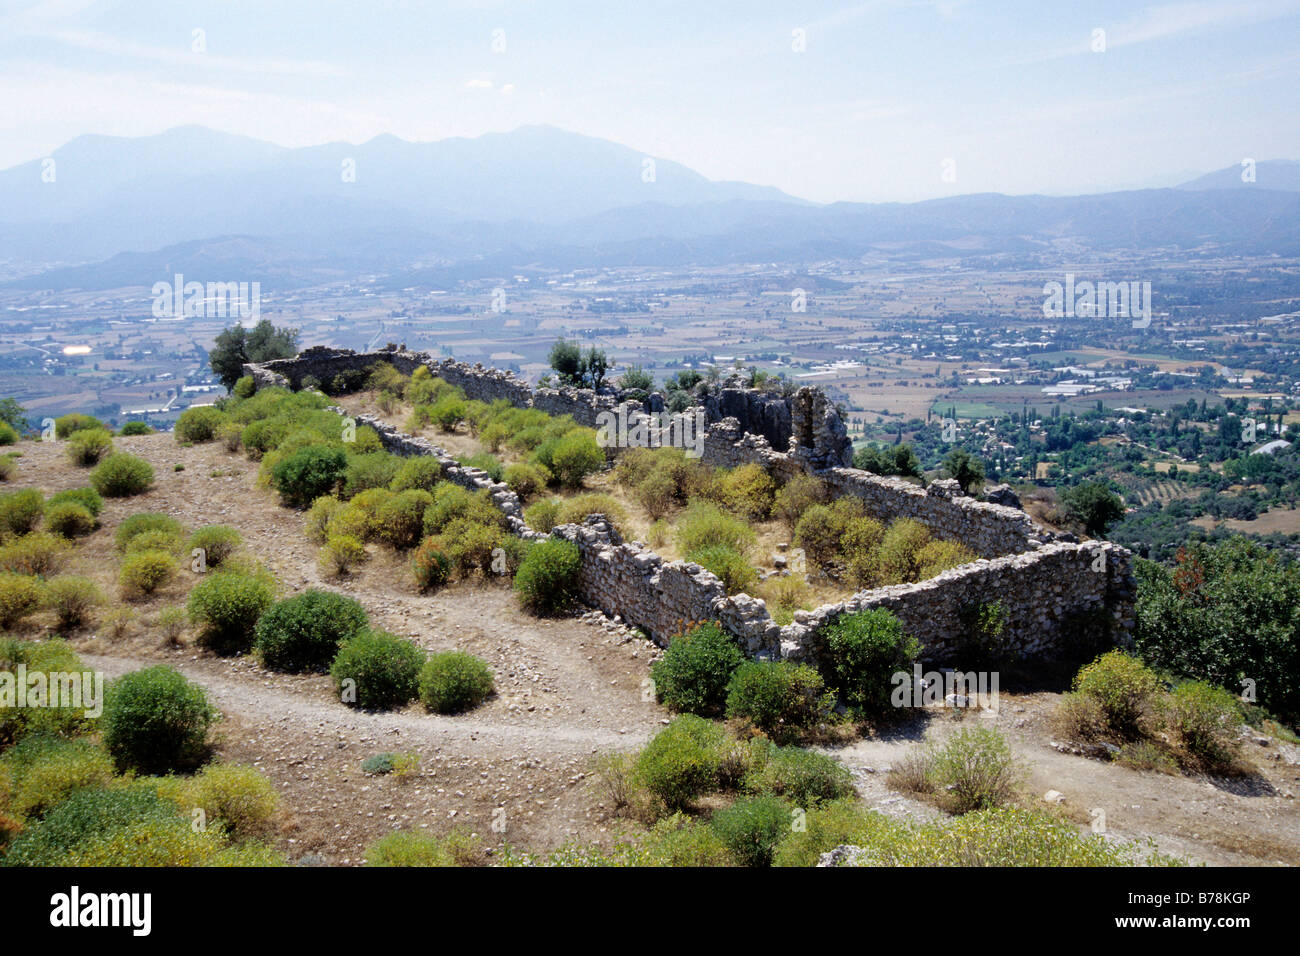 Las ruinas de la antigua ciudad en la ladera de una montaña, Tlos, Fethiye, provincia de Mugla, Turquía Foto de stock